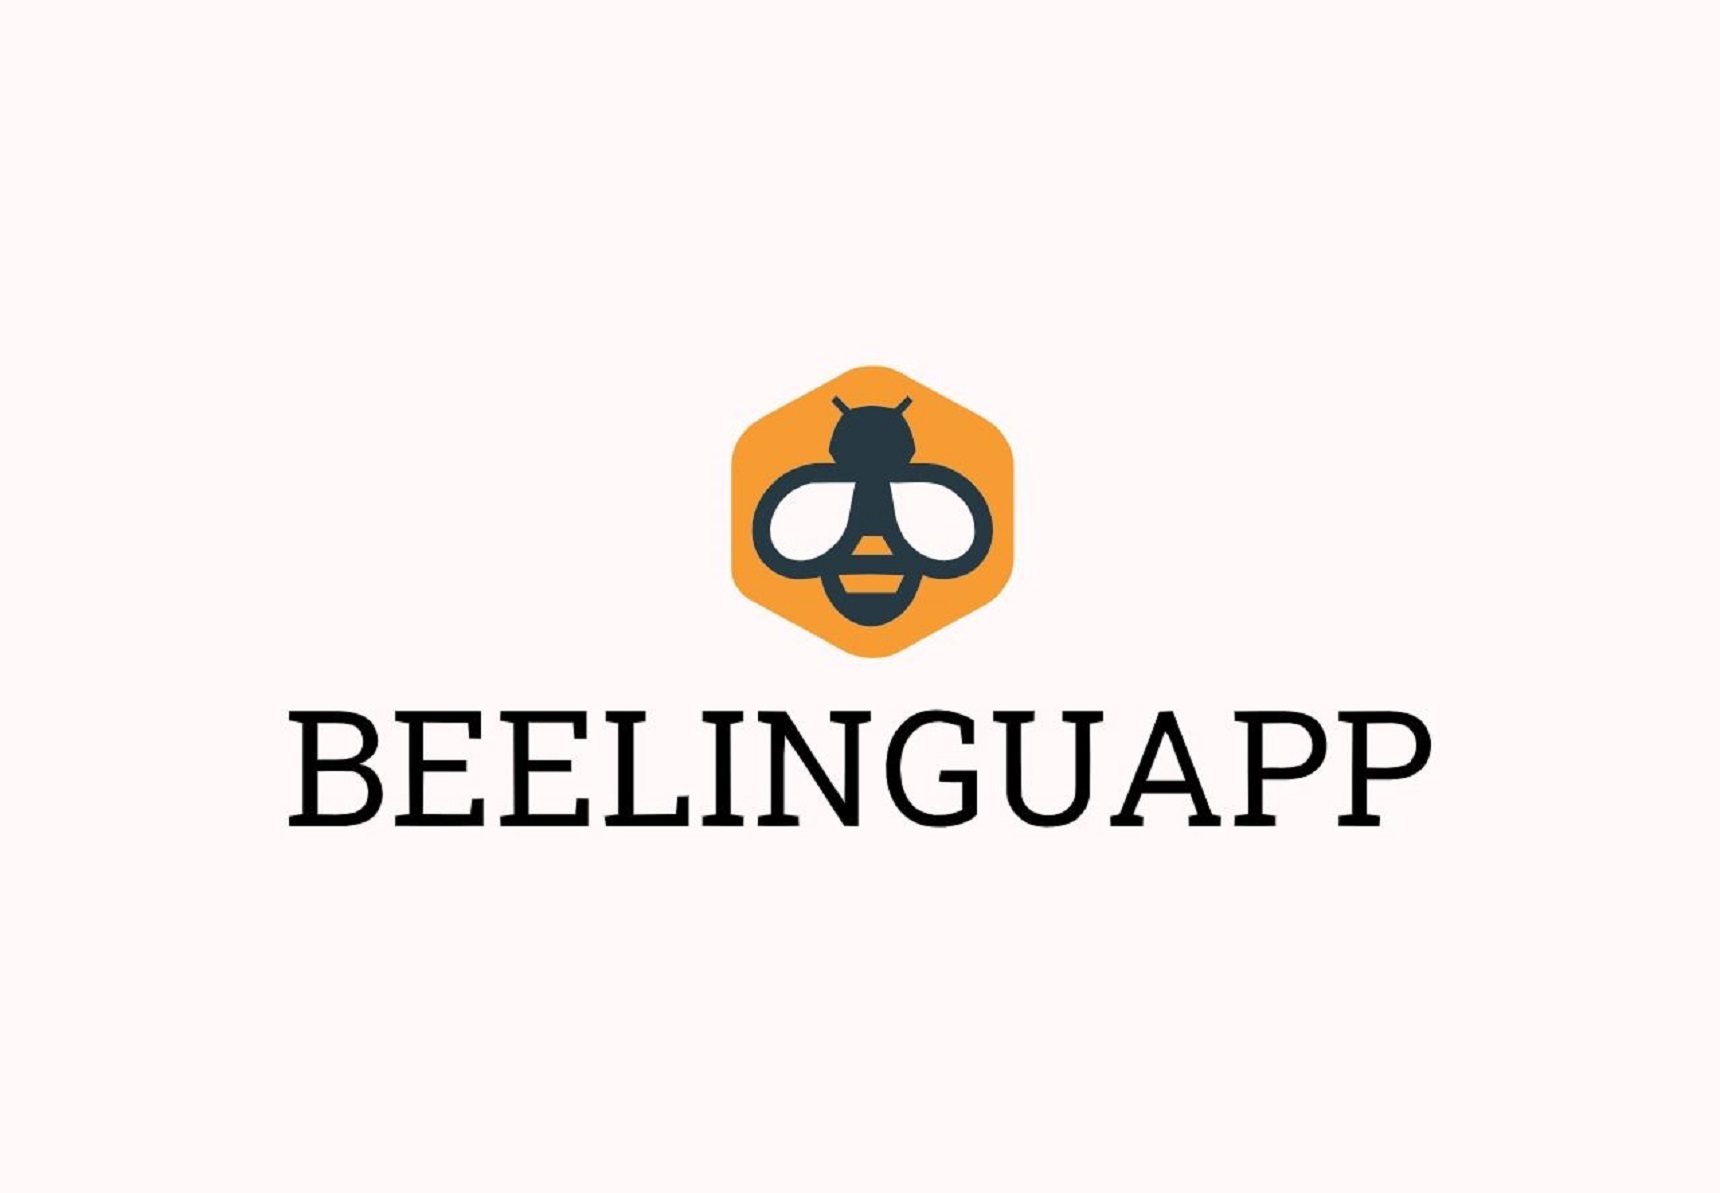 Beelinguapp Premium MOD APK 2.888 (Unlocked) Android